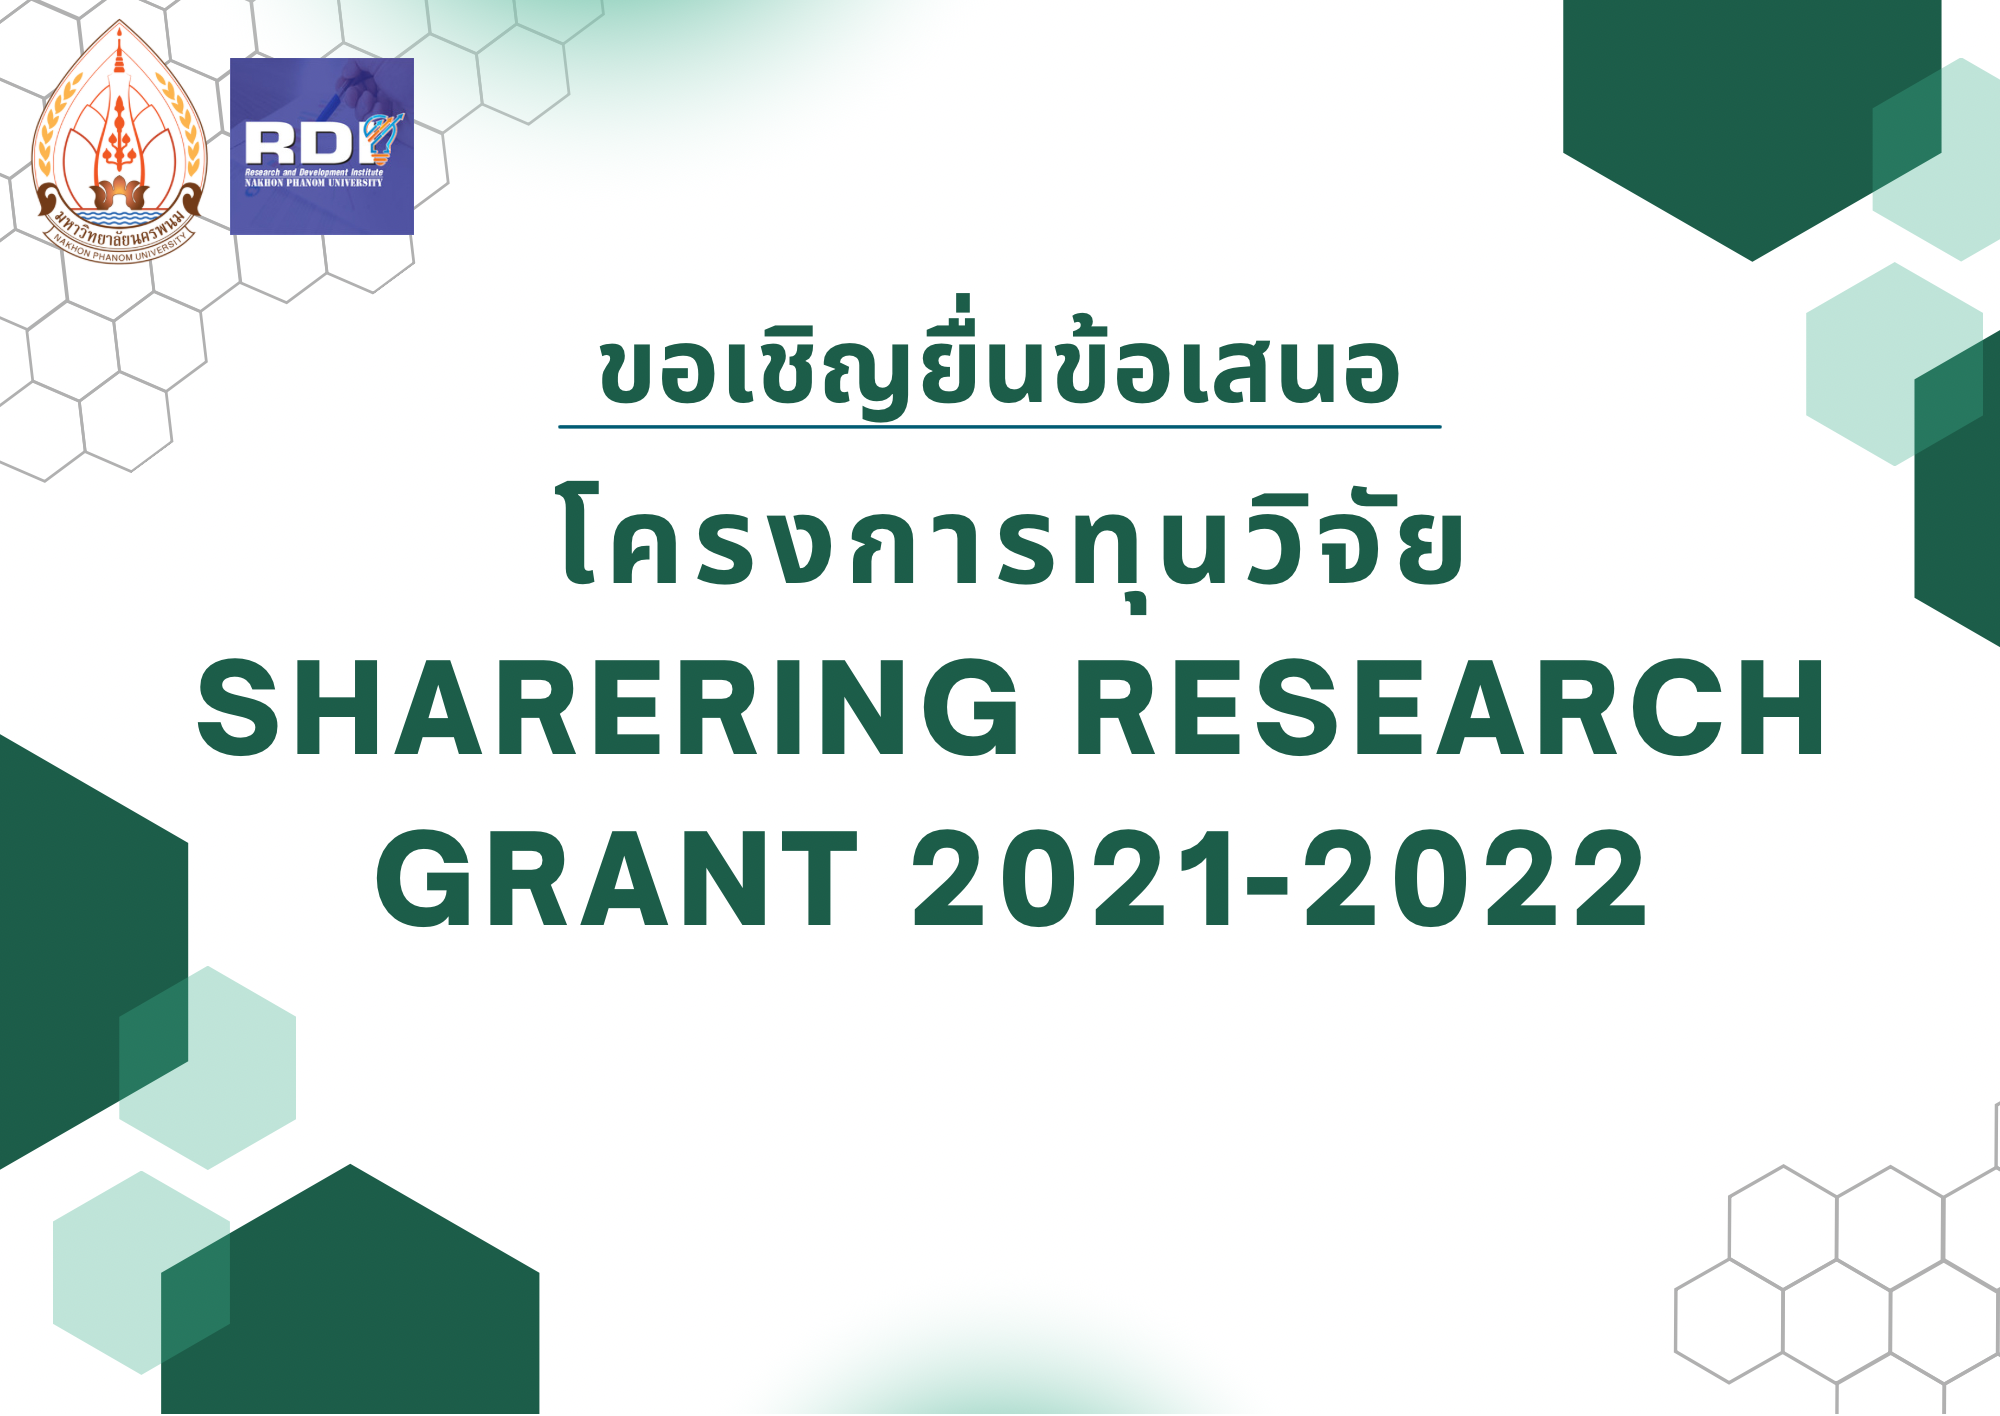 ขอเชิญยื่นข้อเสนอโครงการทุนวิจัย Sharering Research Grant 2021-2022